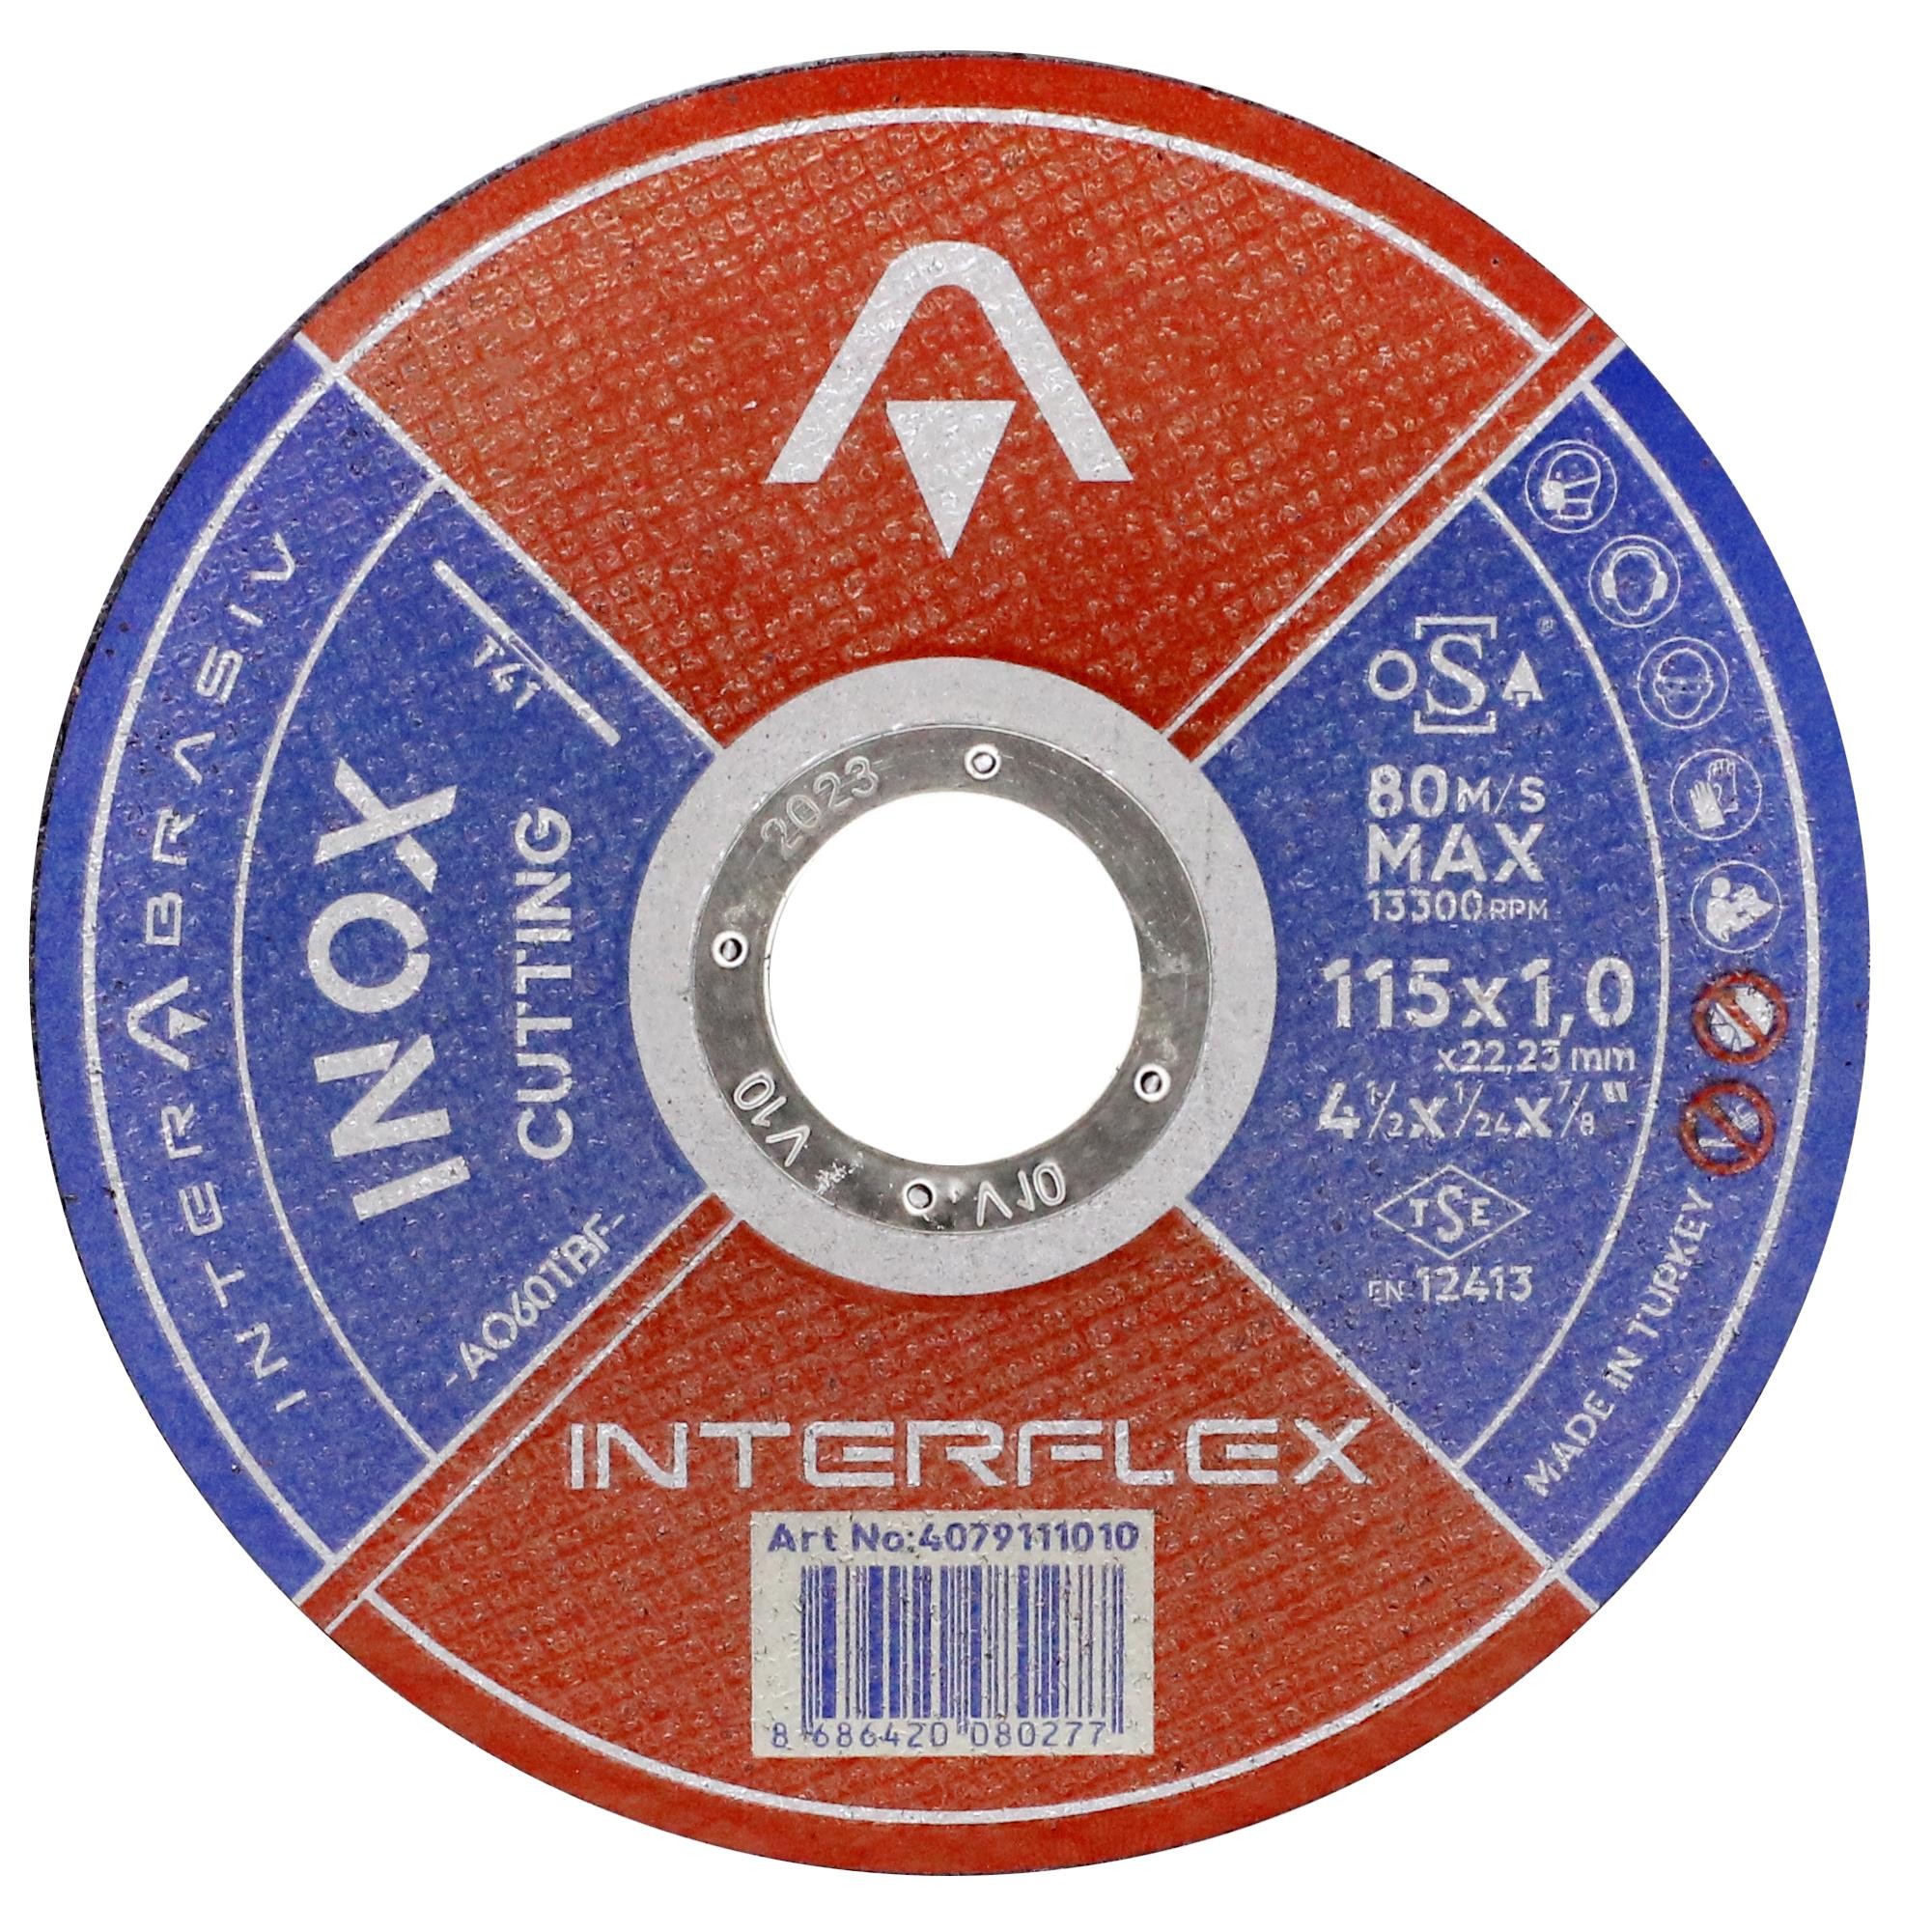 İnterflex İnox Metal Kesici Taş Disk 115x1.0x22.23 mm